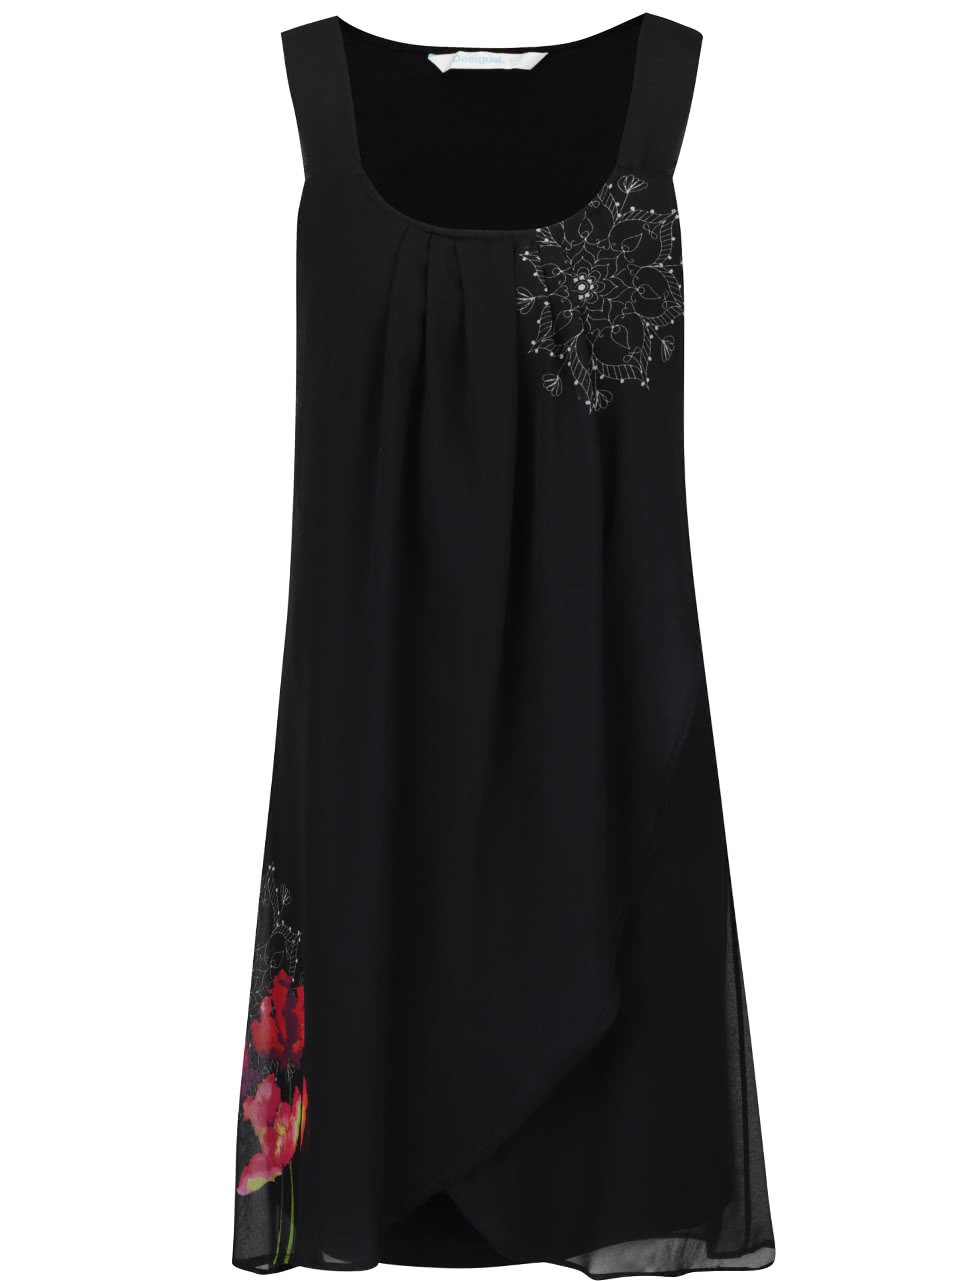 Černé šaty na ramínka s květy vlčích máků Desigual Nuri